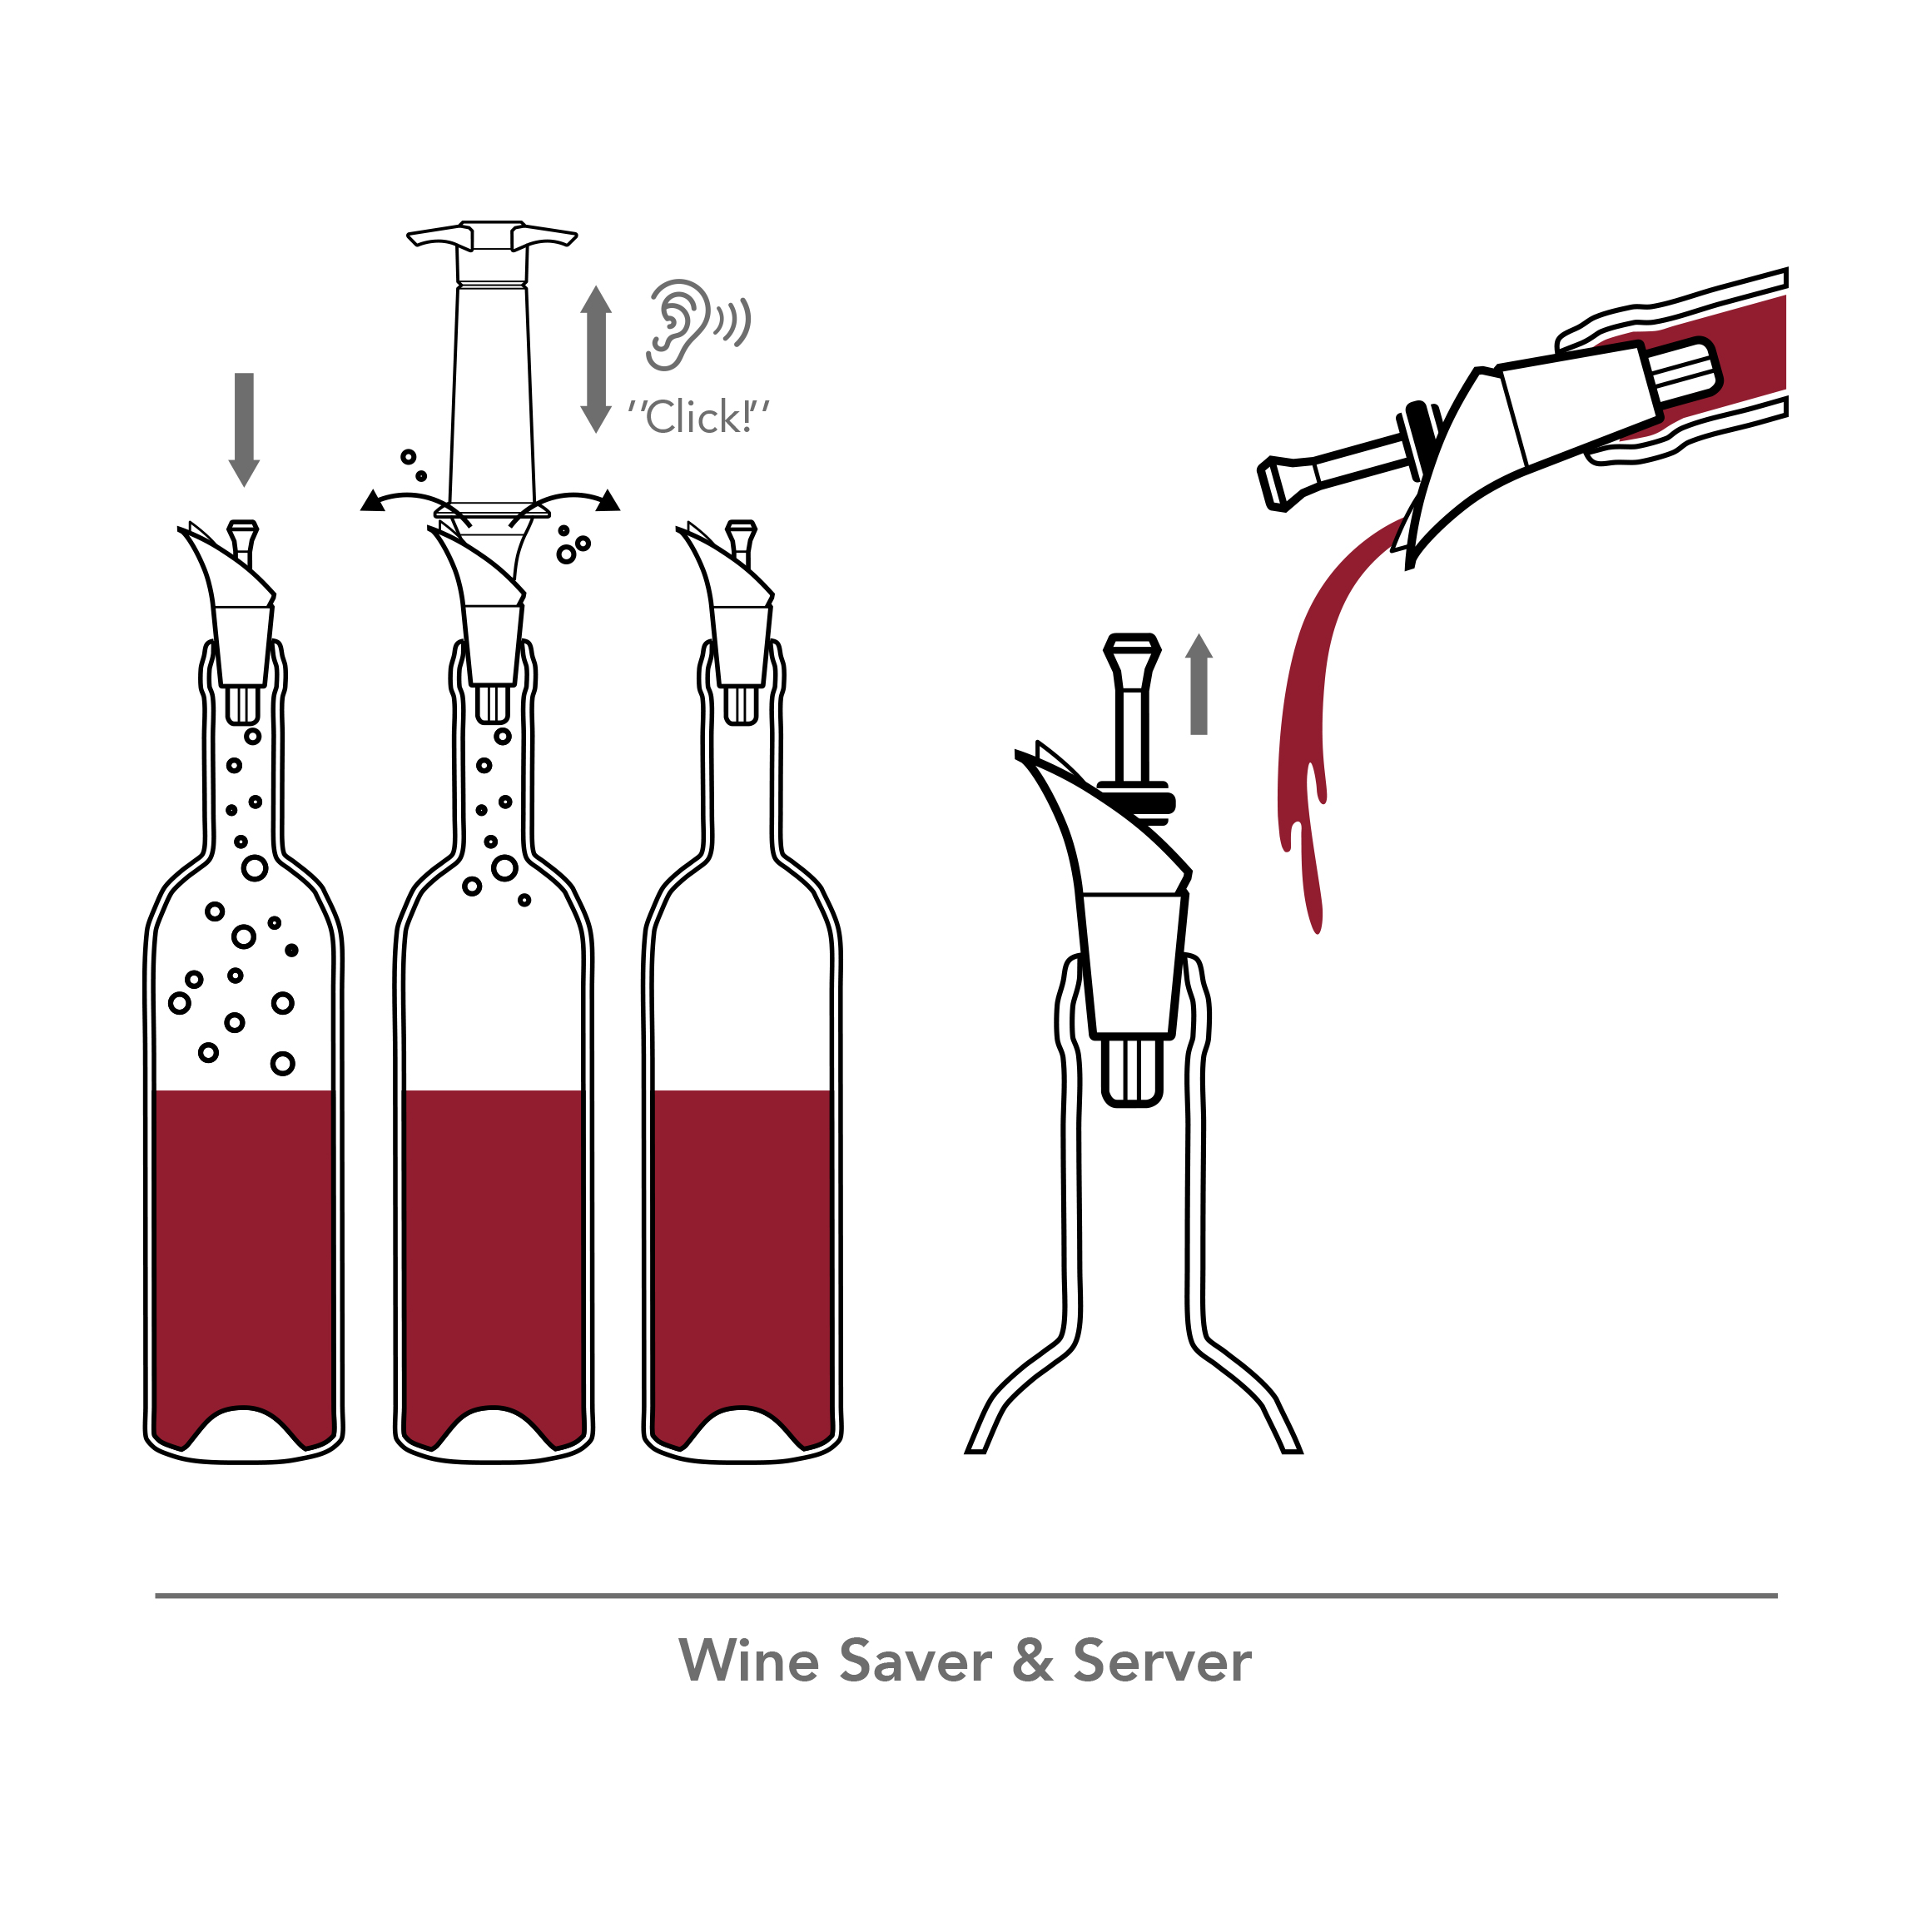 Set de vino promocionales-Catálogo Bar y Vino promocionales